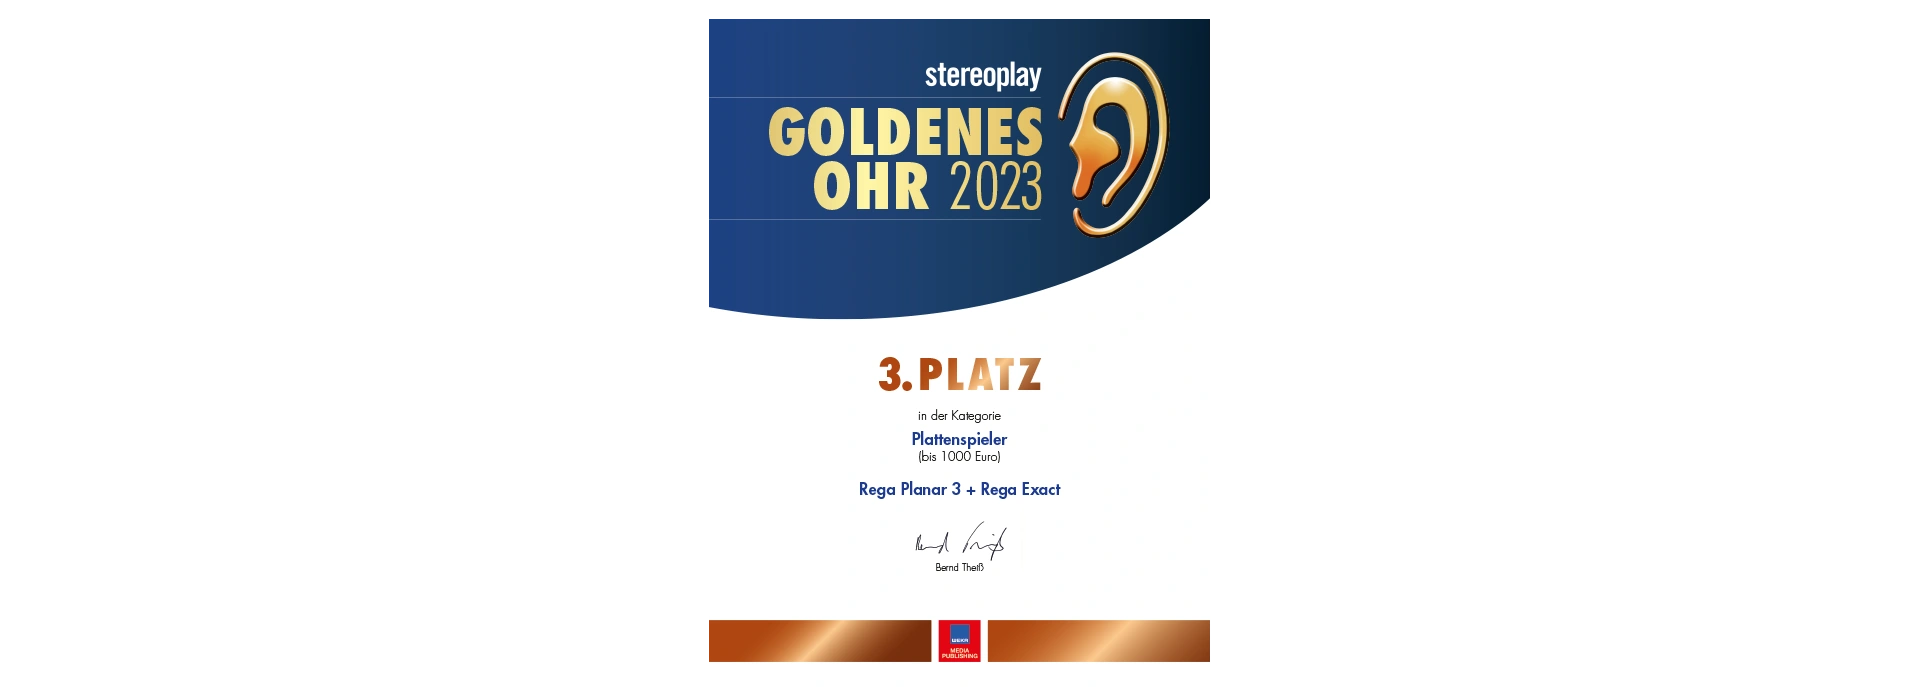 Stereoplay | Goldenes Ohr 2023 | 3. Platz für REGA Planar 3 & Exact